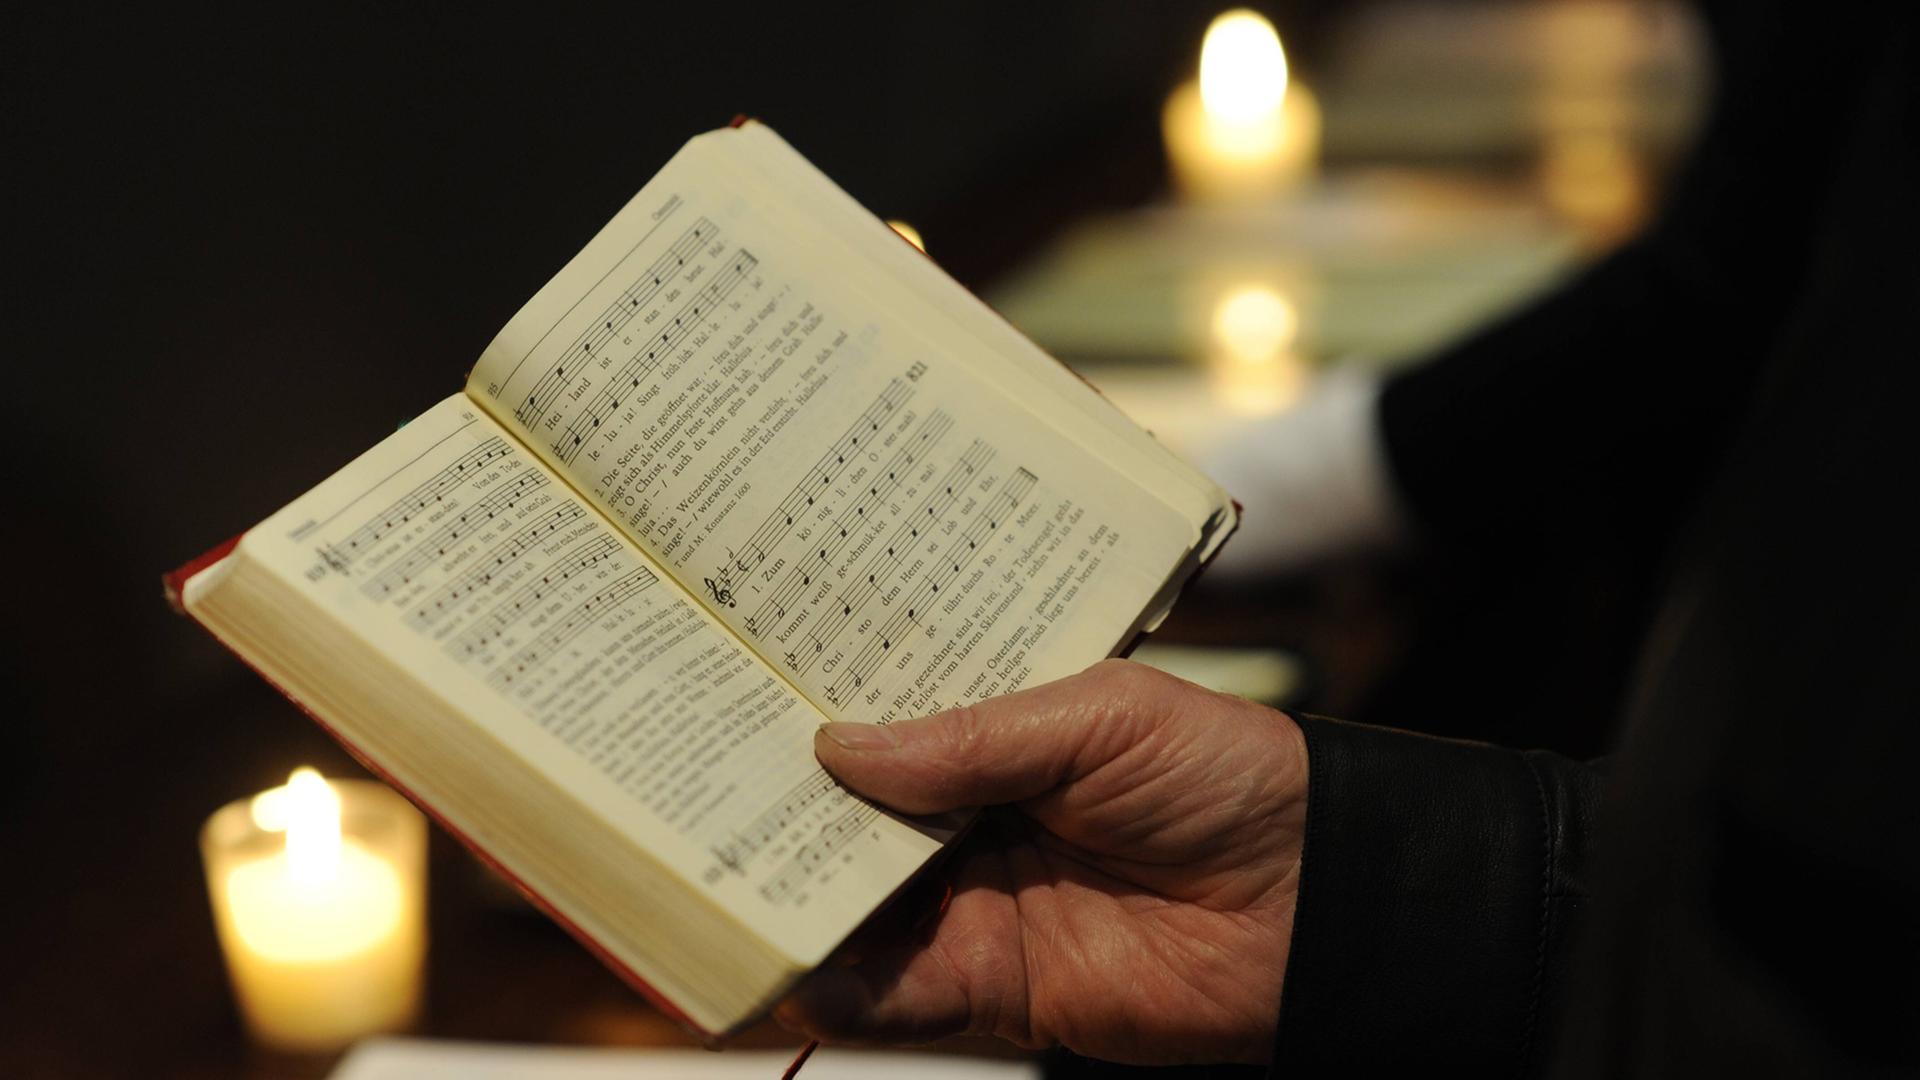 Gesangsbuch eines Männerchors, umrahmt von zwei Kerzen